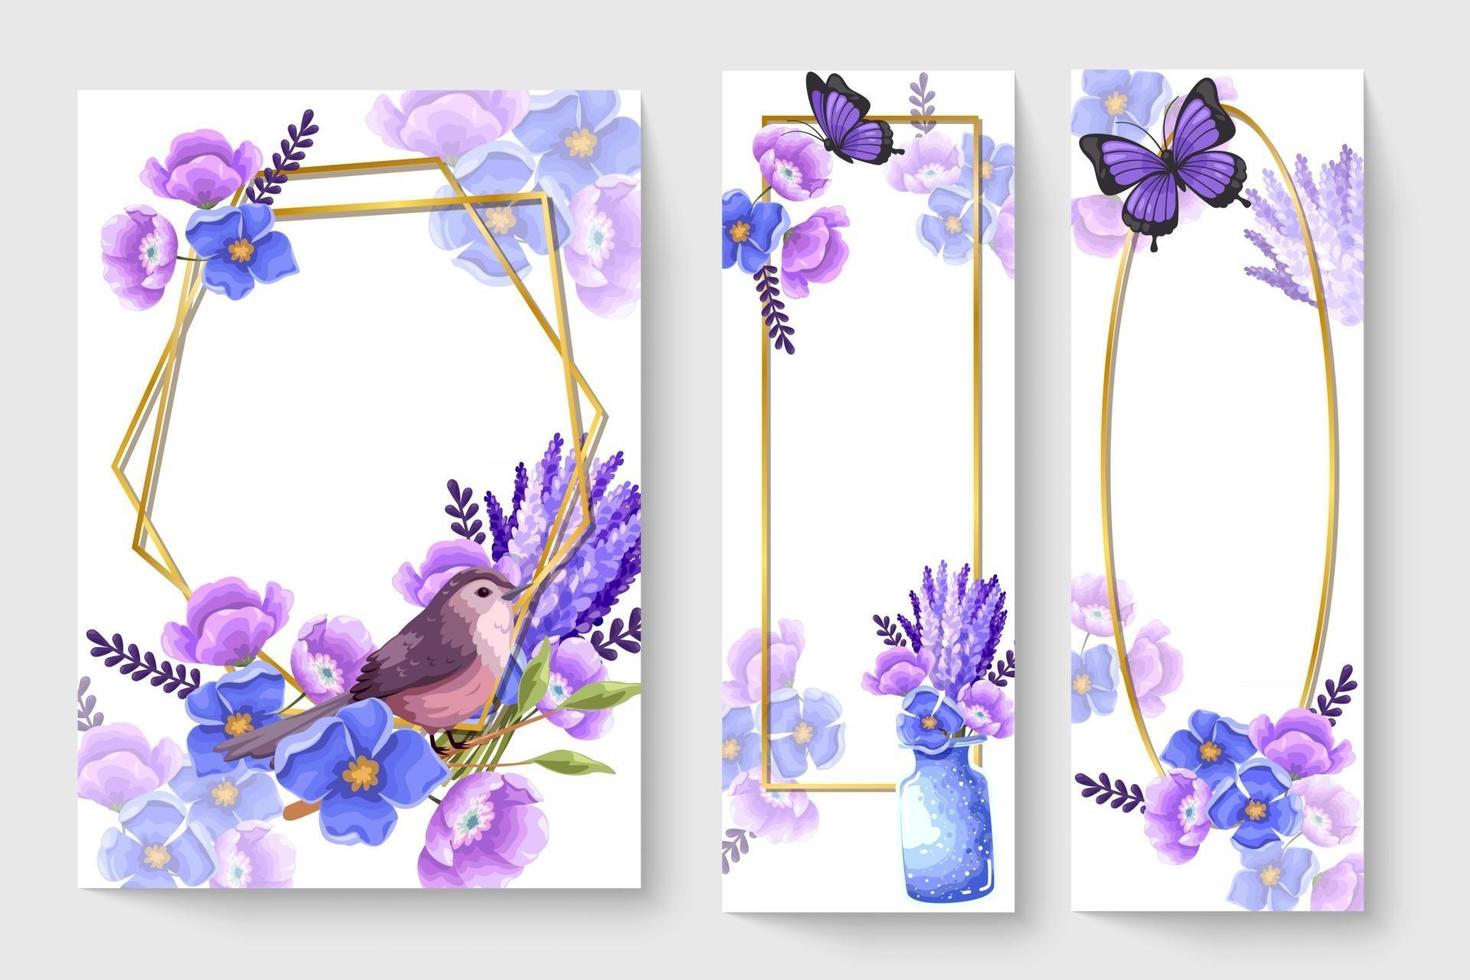 carta botanica con fiori viola, foglie, uccelli. concetto di ornamento di primavera. poster floreale, invito. vettore layout decorativo biglietto di auguri o invito sfondo di progettazione illustrazione disegnata a mano